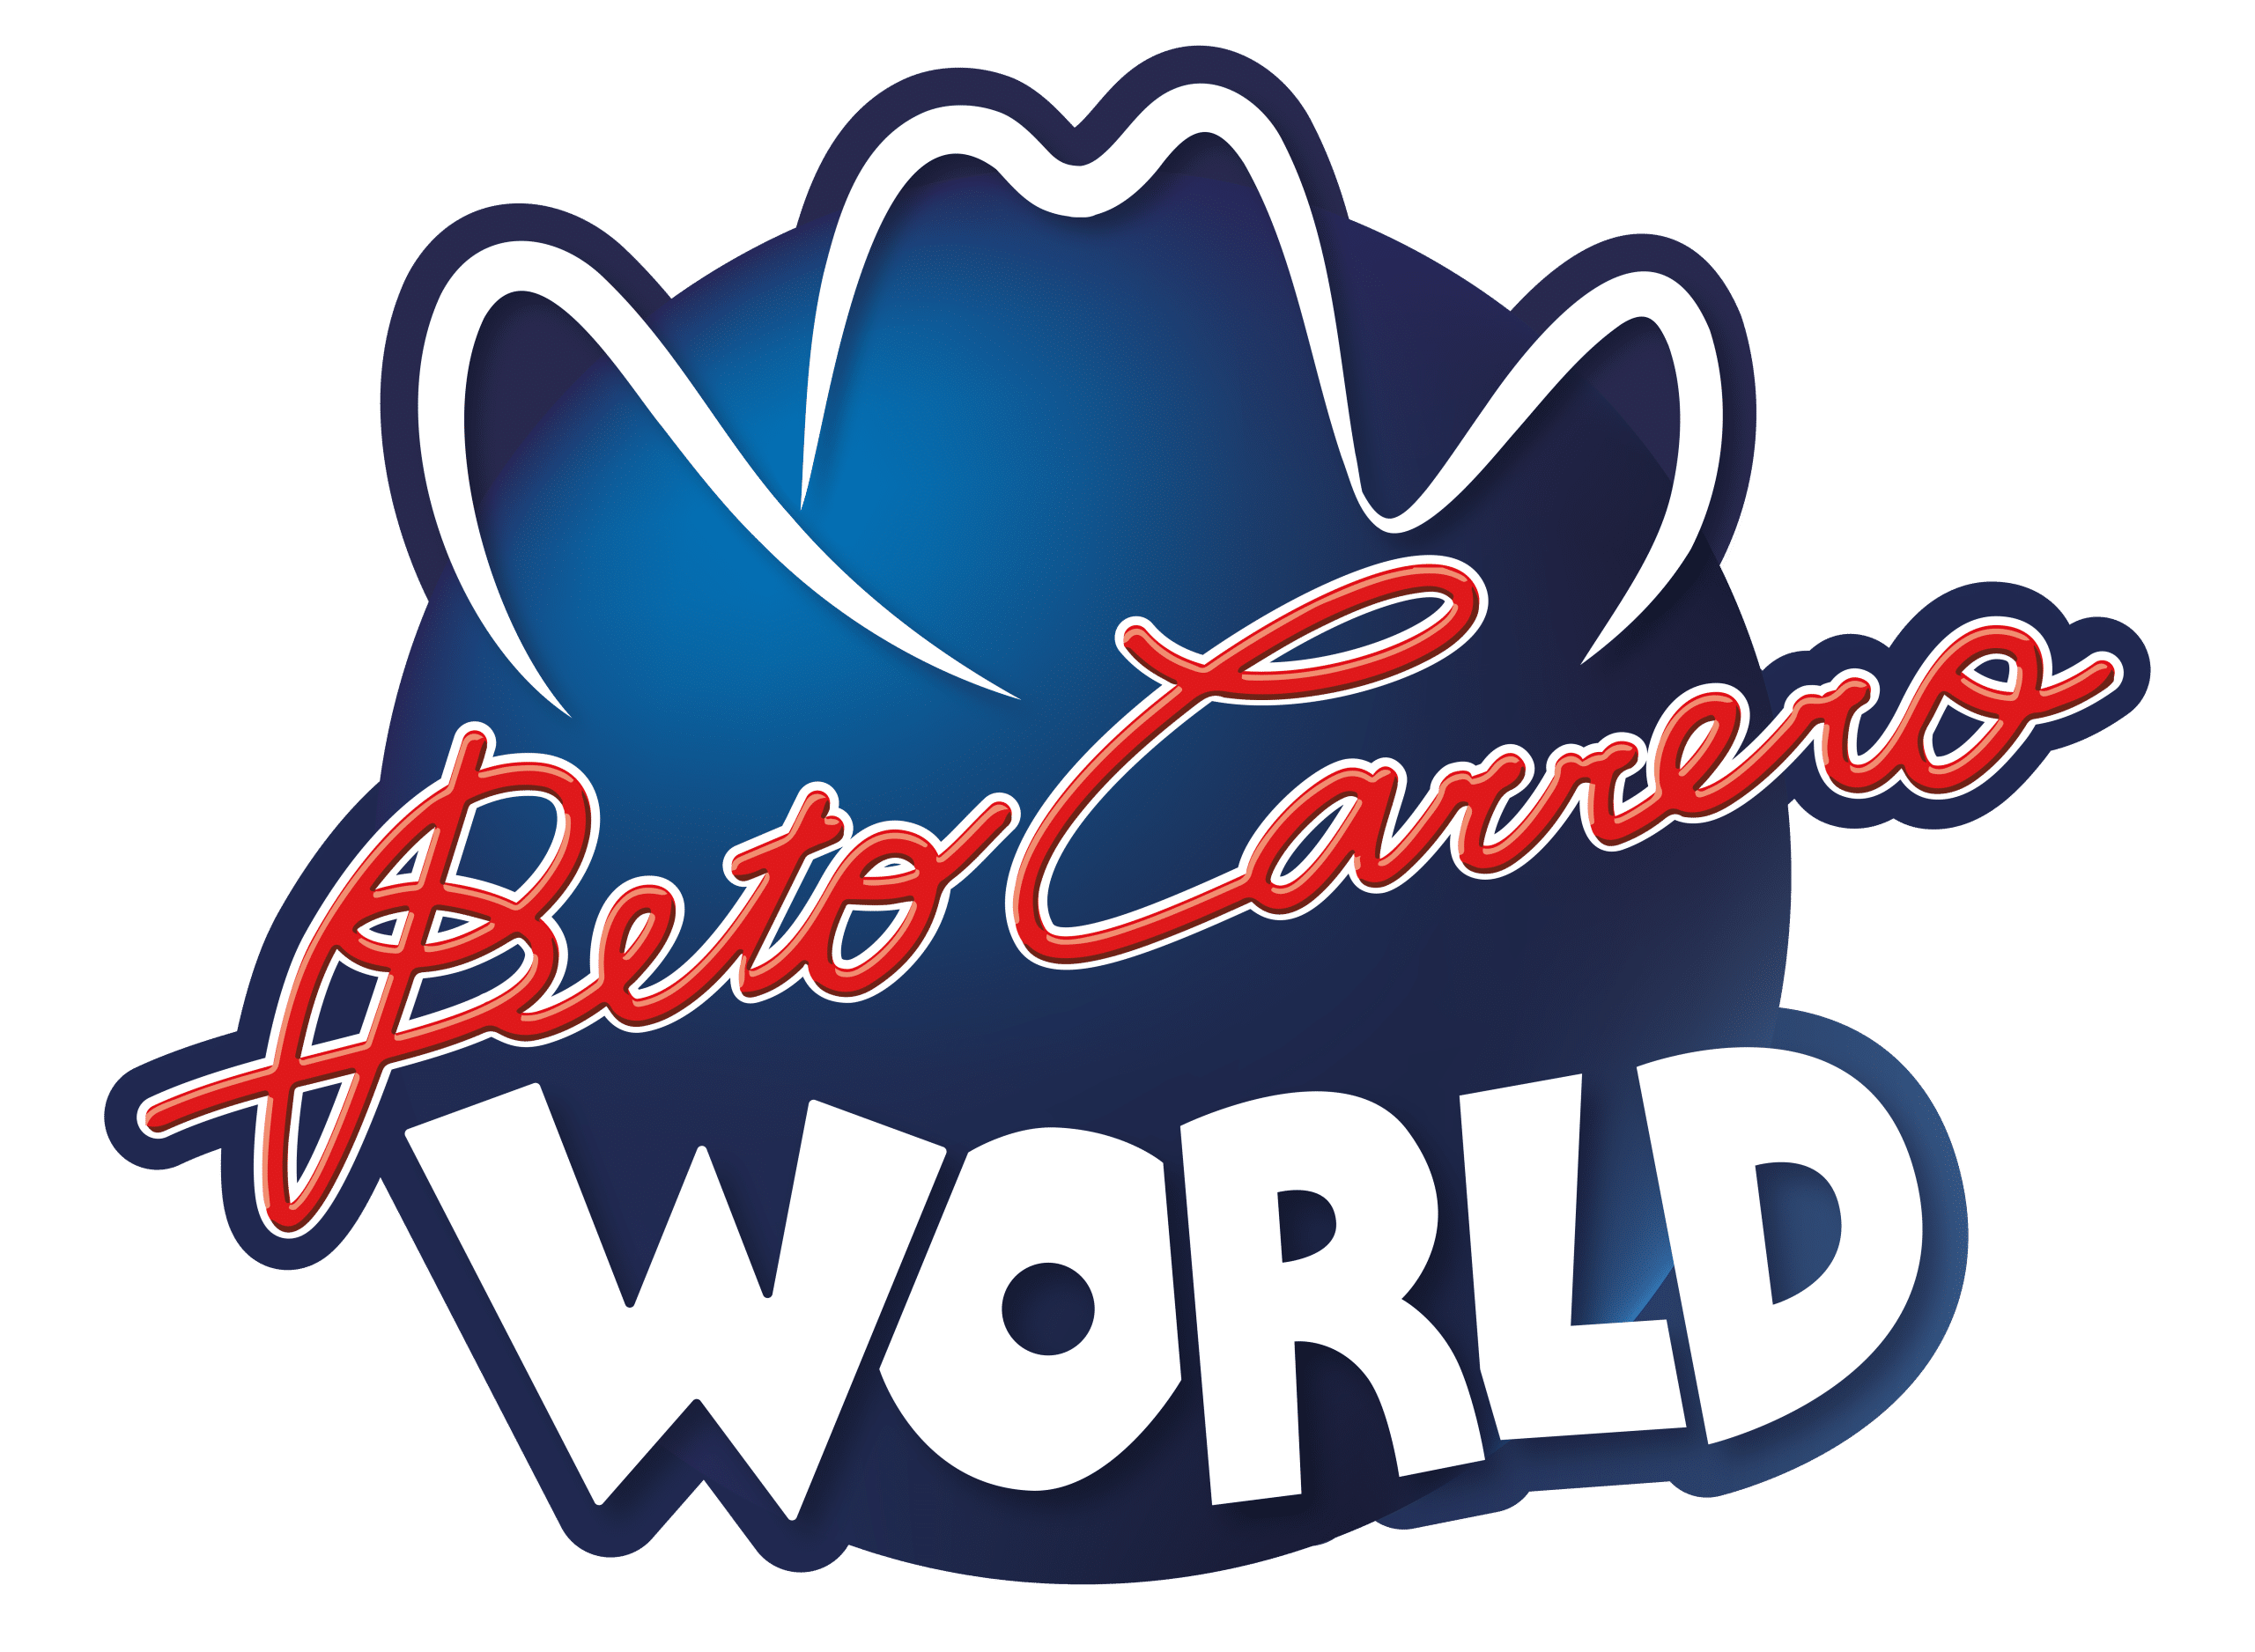 Logo Beto Carrero World transparente